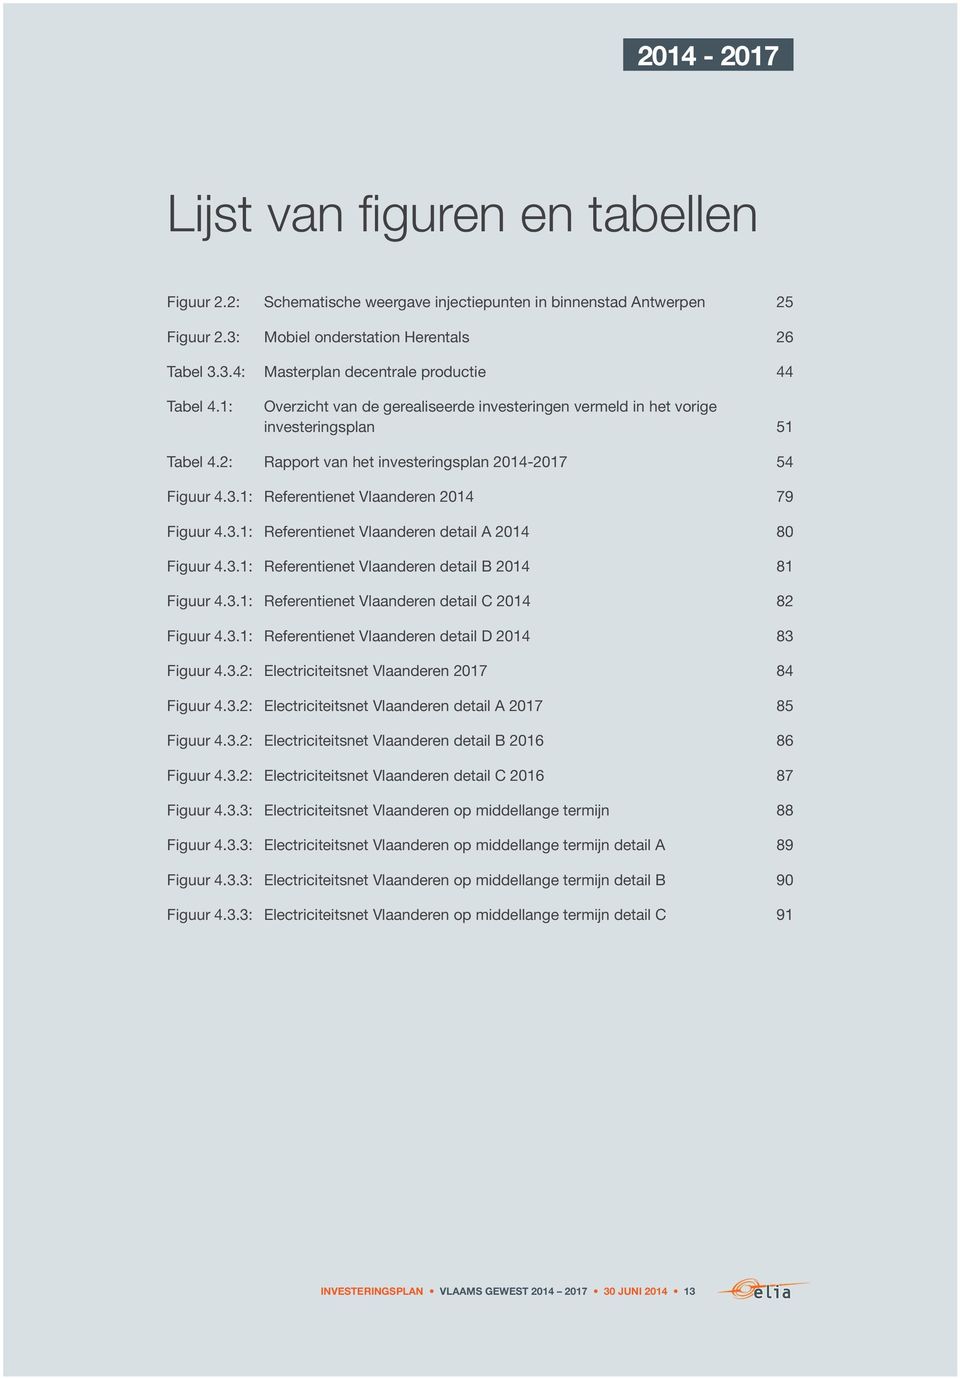 1: Referentienet Vlaanderen 2014 79 Figuur 4.3.1: Referentienet Vlaanderen detail A 2014 80 Figuur 4.3.1: Referentienet Vlaanderen detail B 2014 81 Figuur 4.3.1: Referentienet Vlaanderen detail C 2014 82 Figuur 4.